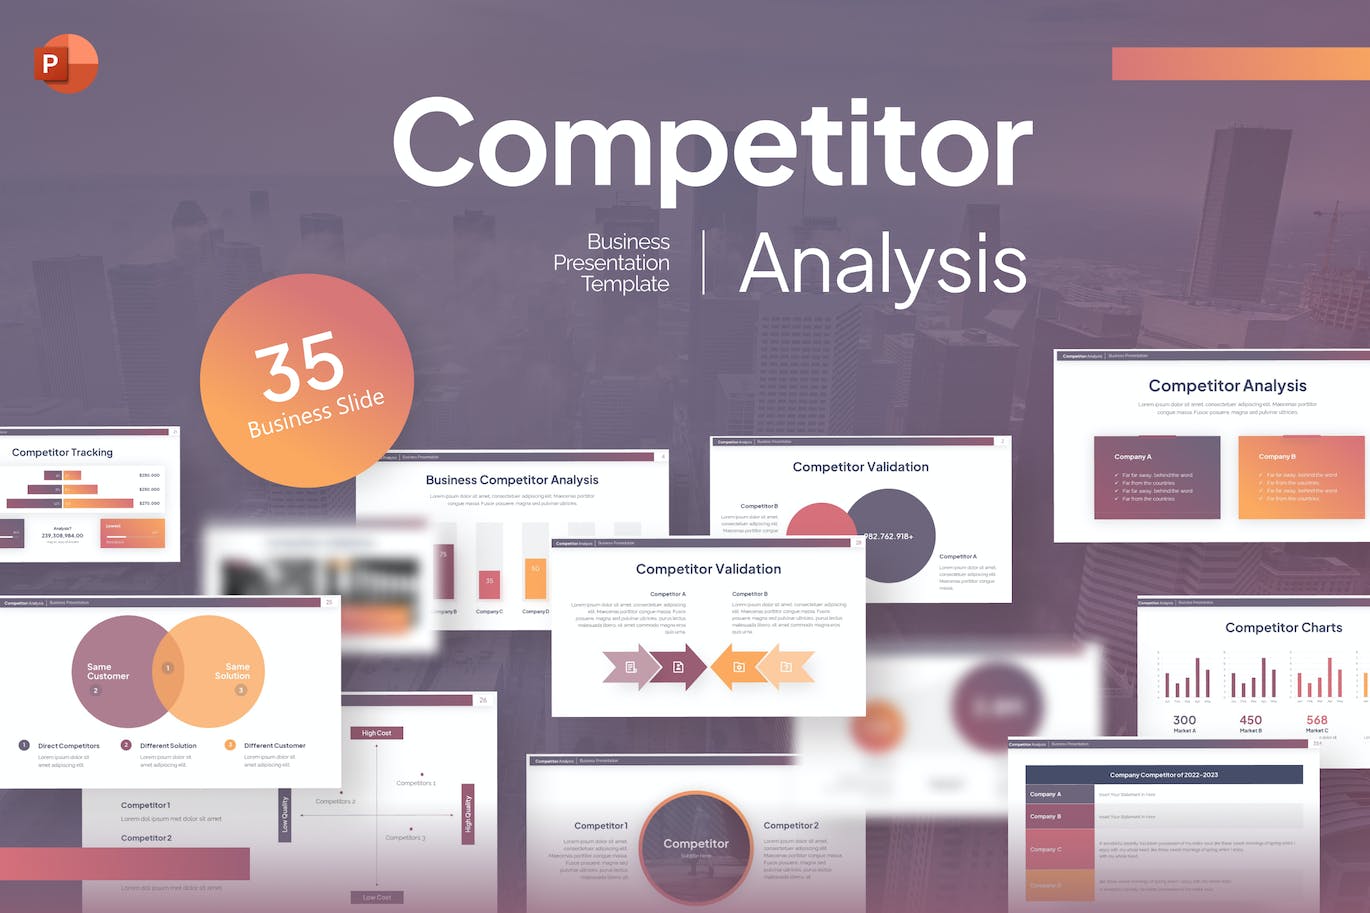 竞争对手分析PPT幻灯片模板素材 Competitor Analysis PowerPoint Template 幻灯图表 第1张